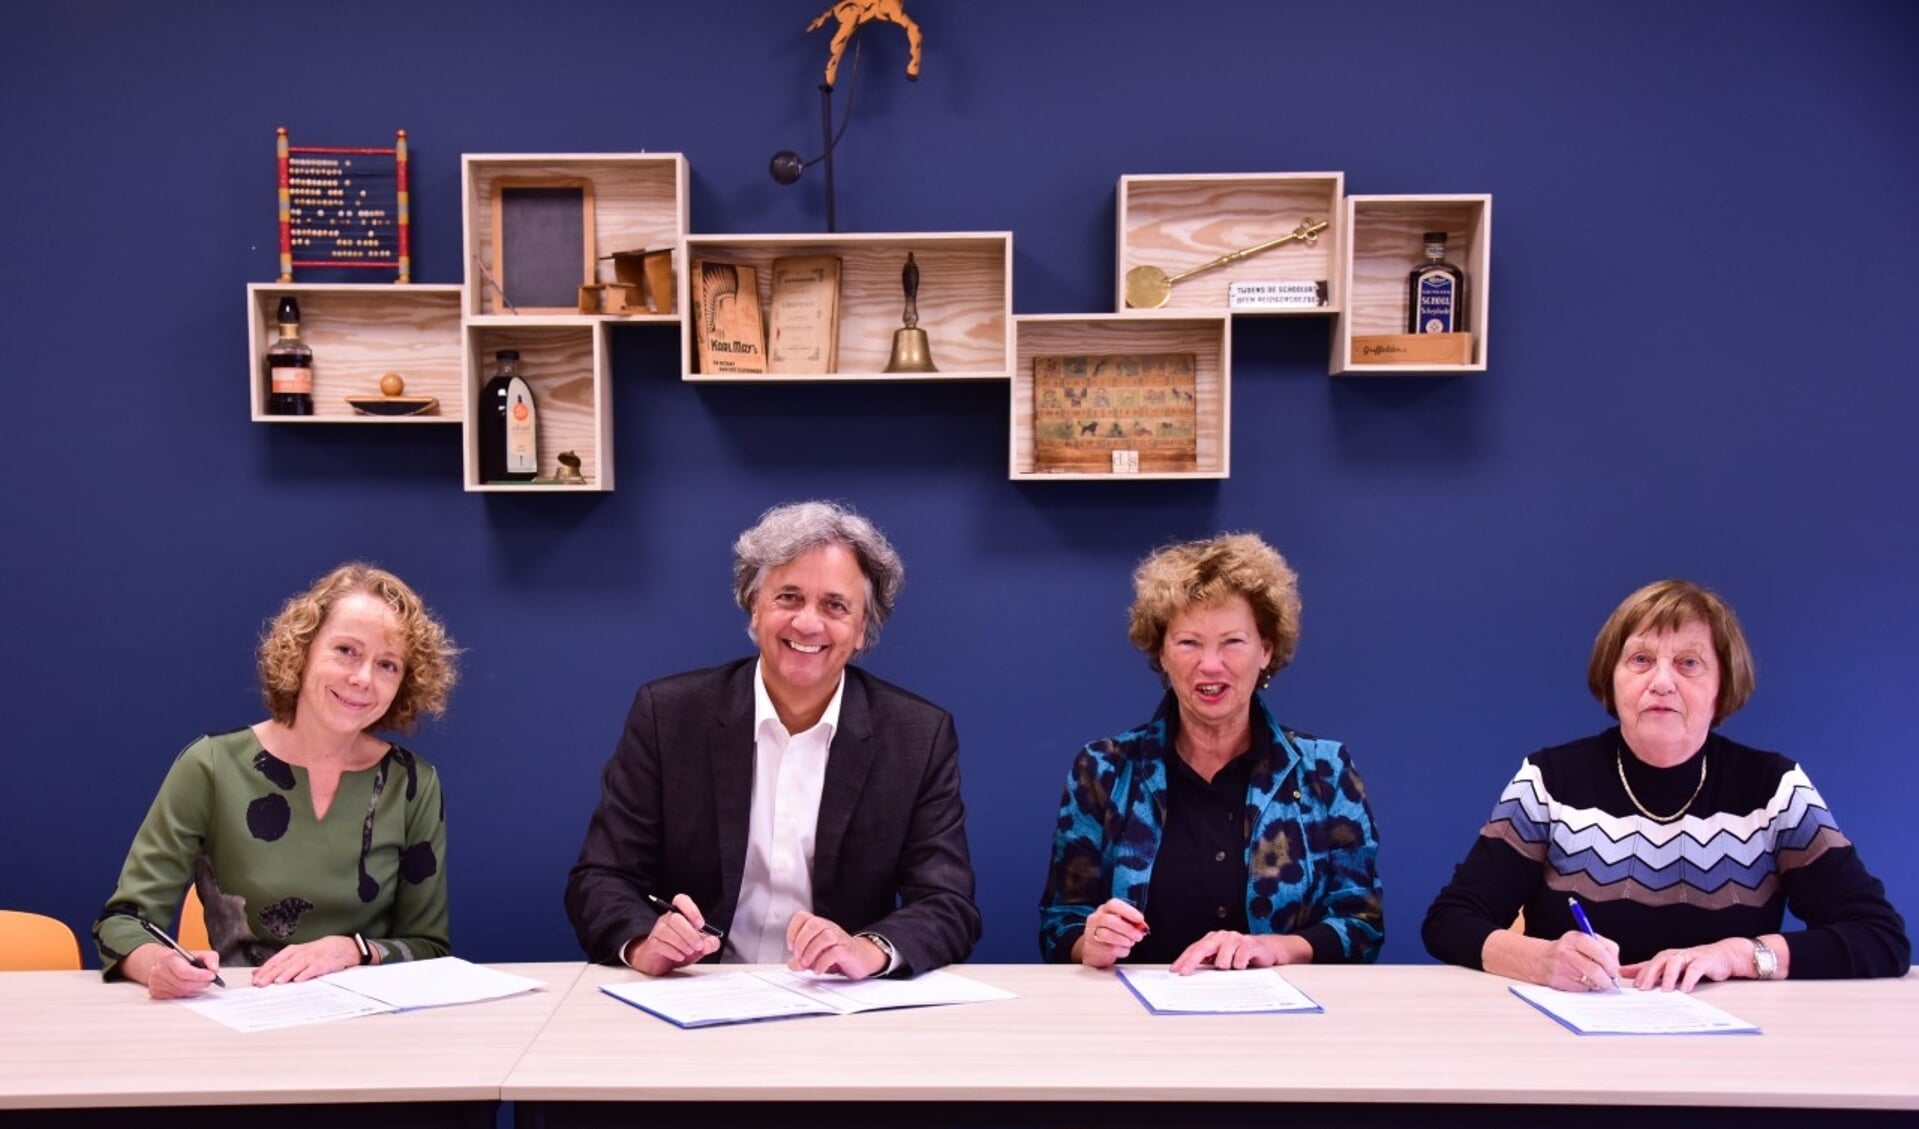 Dieke Wesselingh (Erfgoed ’s-Hertogenbosch), Jos van Kessel (KW1C), Nan van Schendel (Huis73) en Yvonne Moerman (Kring Vrienden van 's-Hertogenbosch) ondertekenen de samenwerkingsovereenkomst.